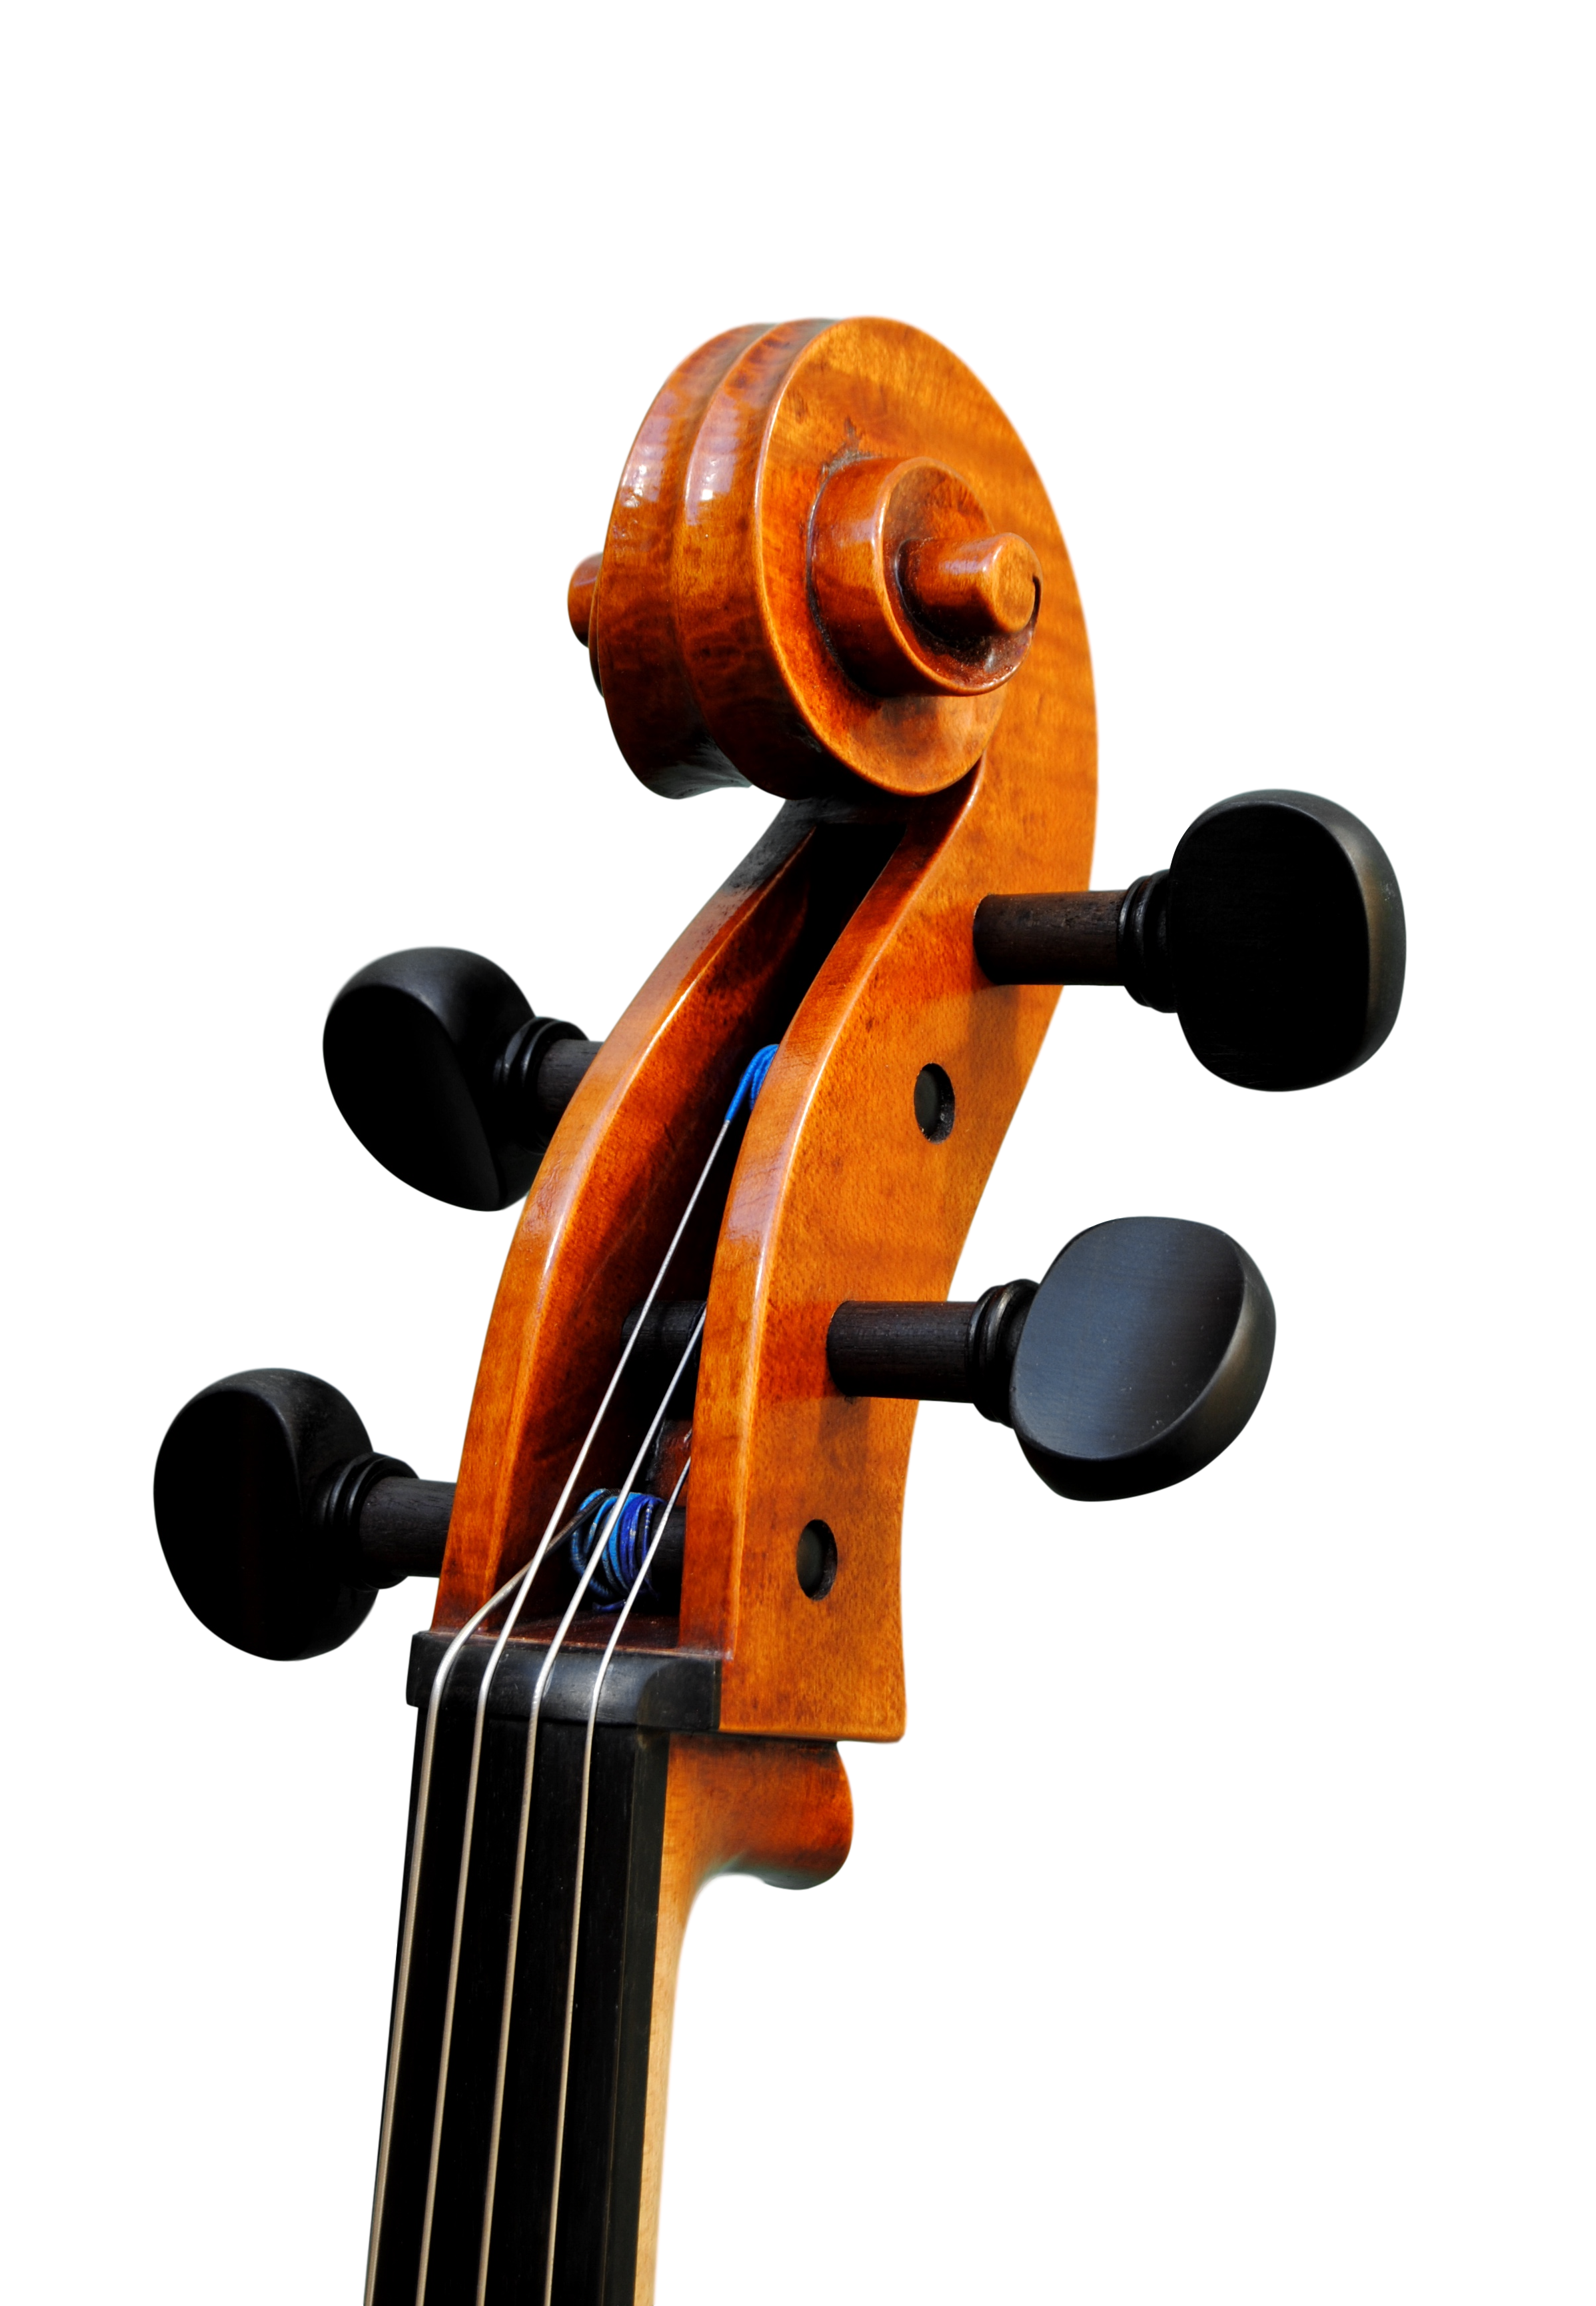 Cello  7/8  - Edgar Russ, Francesco Ruggeri, Cremona 2020